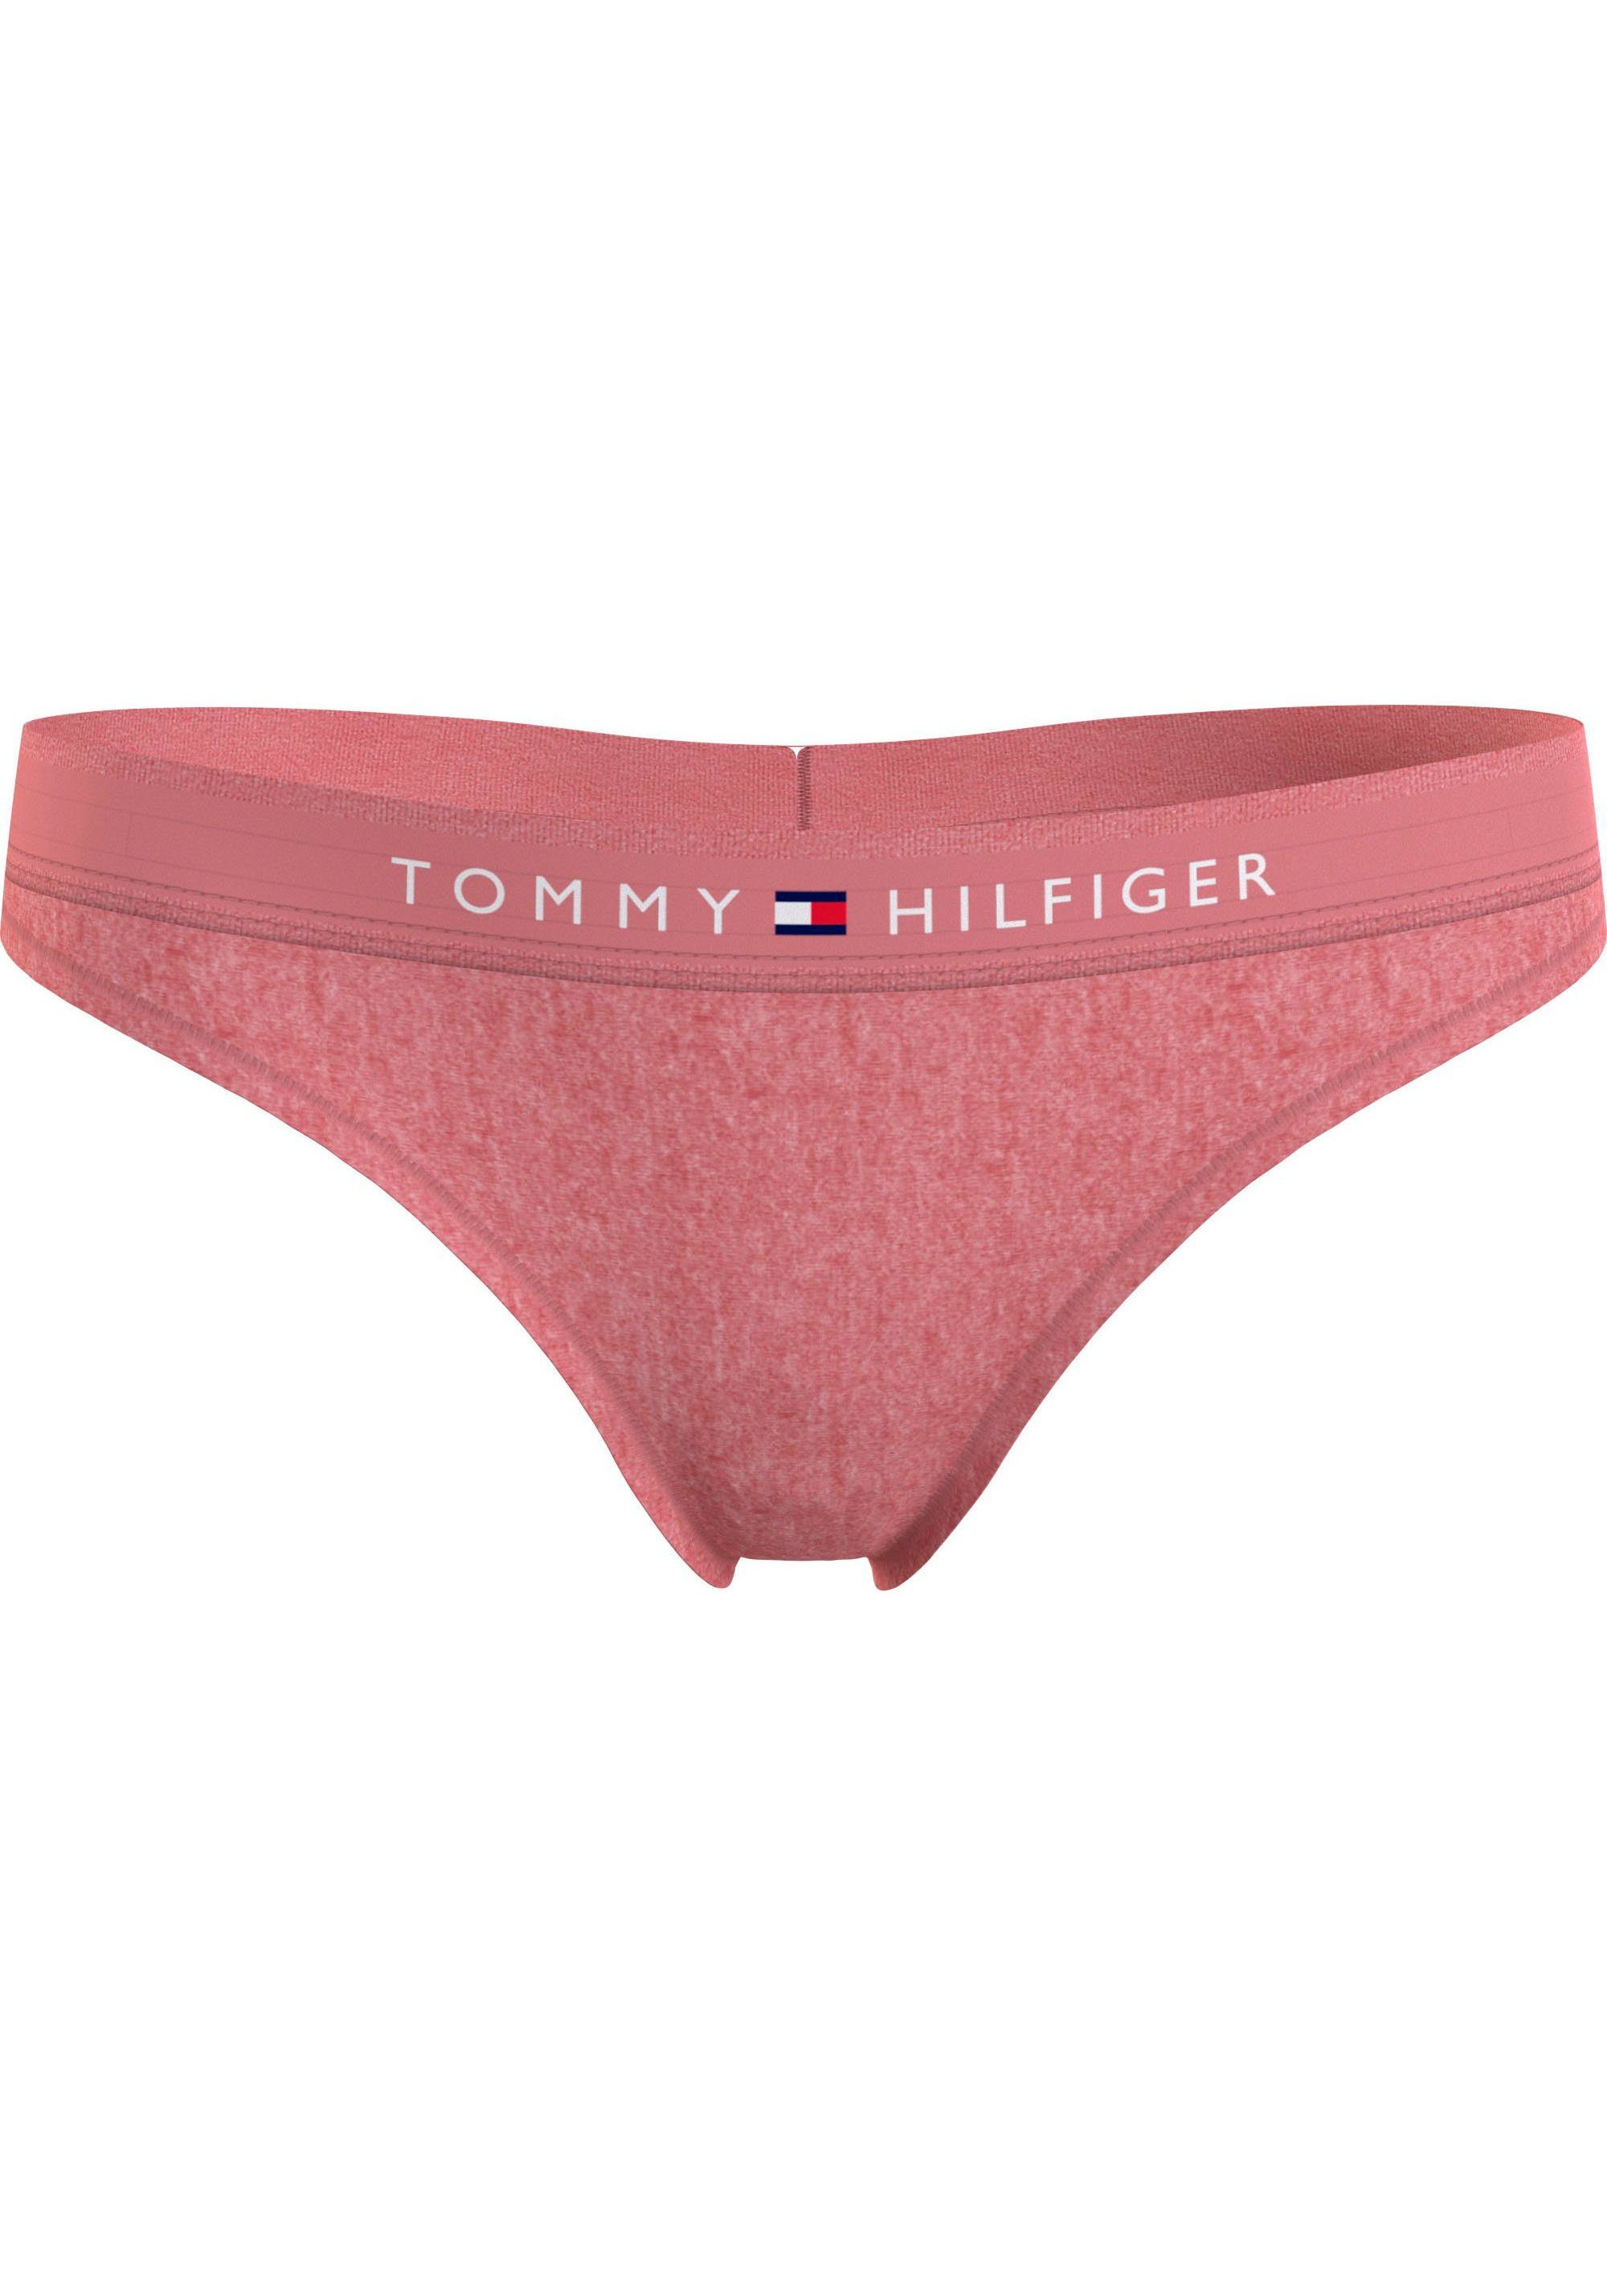 Tommy Hilfiger Underwear T-String THONG (EXT SIZES) mit Tommy Hilfiger Logobund Flora_Pink_Heather | Unterhosen